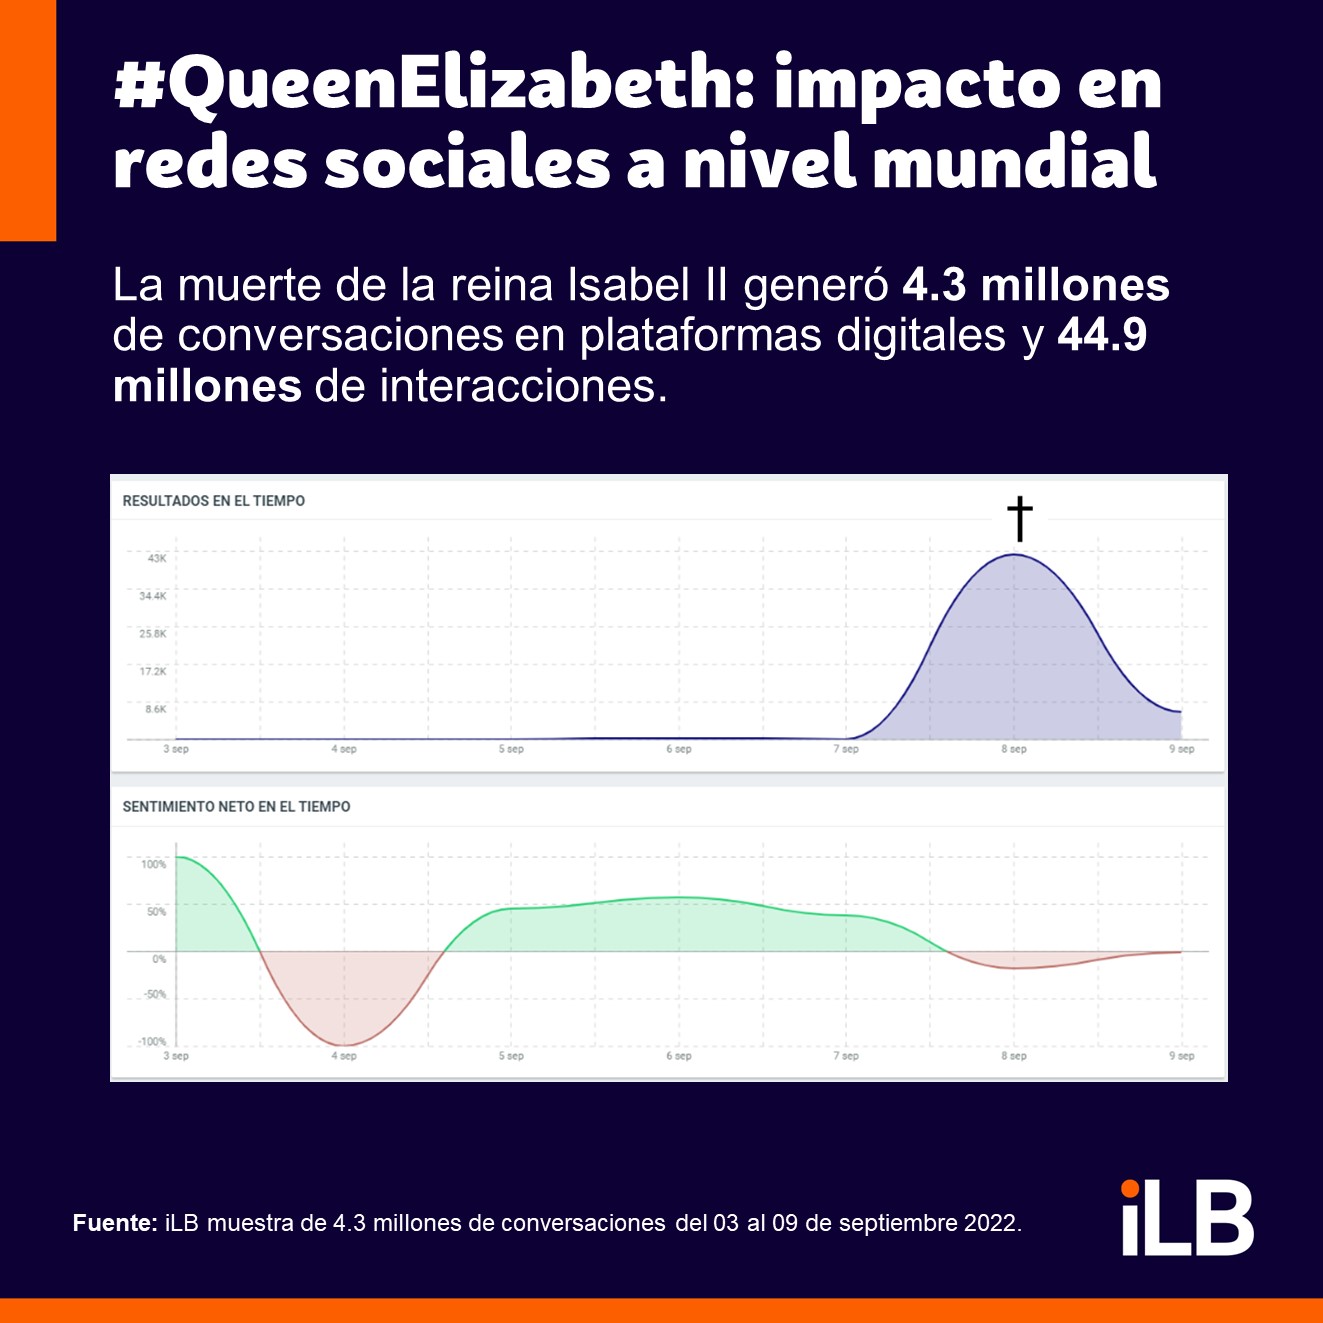 muerte de la reina isabel II en redes sociales